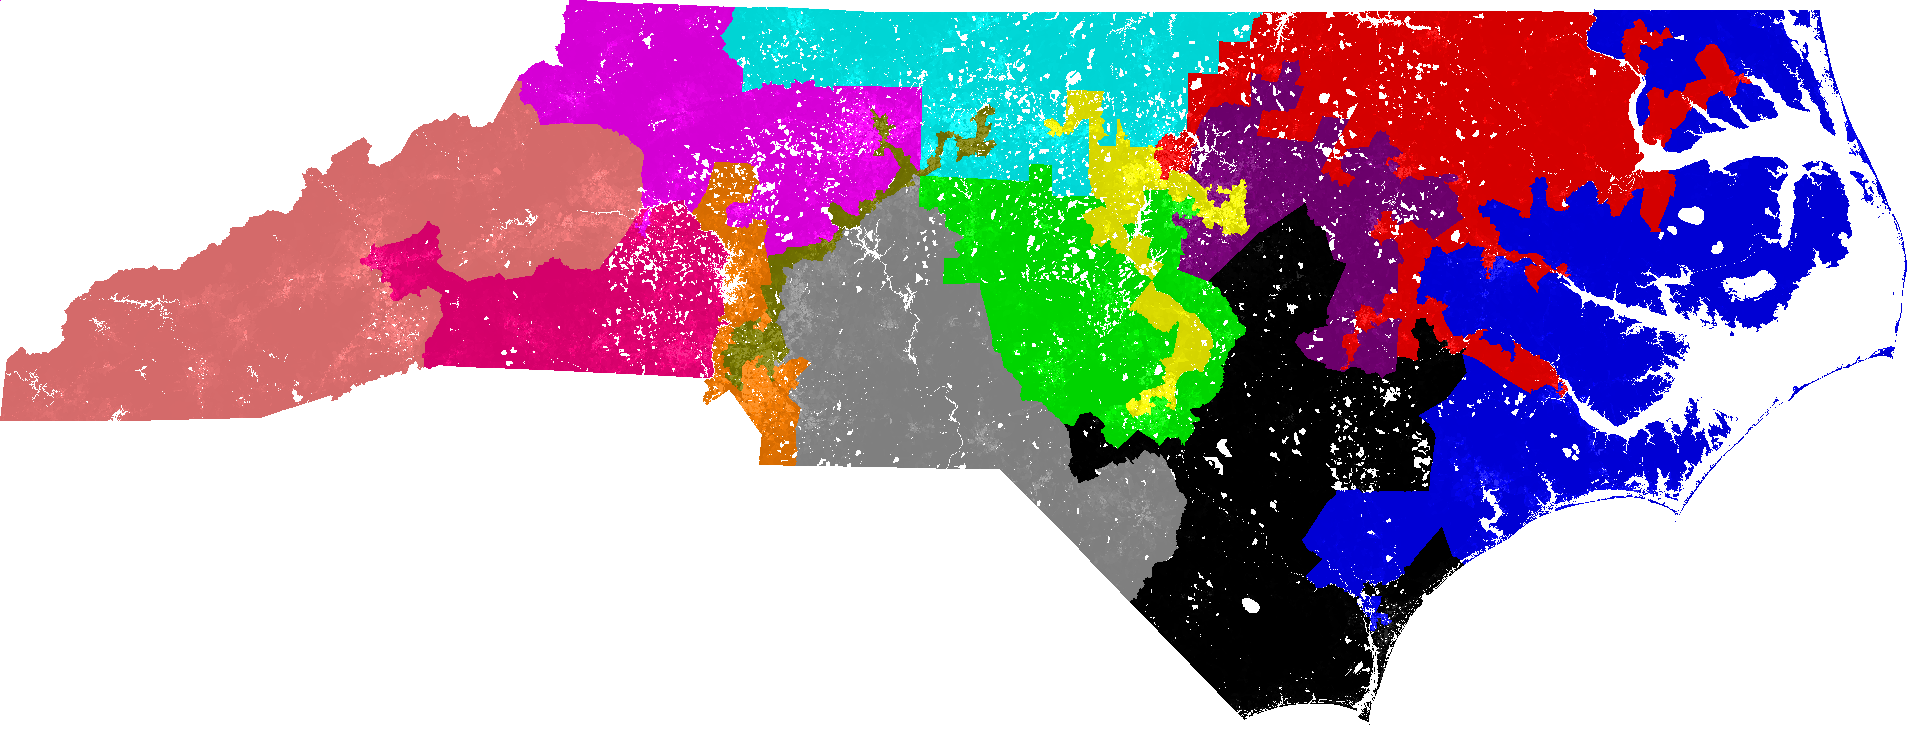 gerrymandering districts